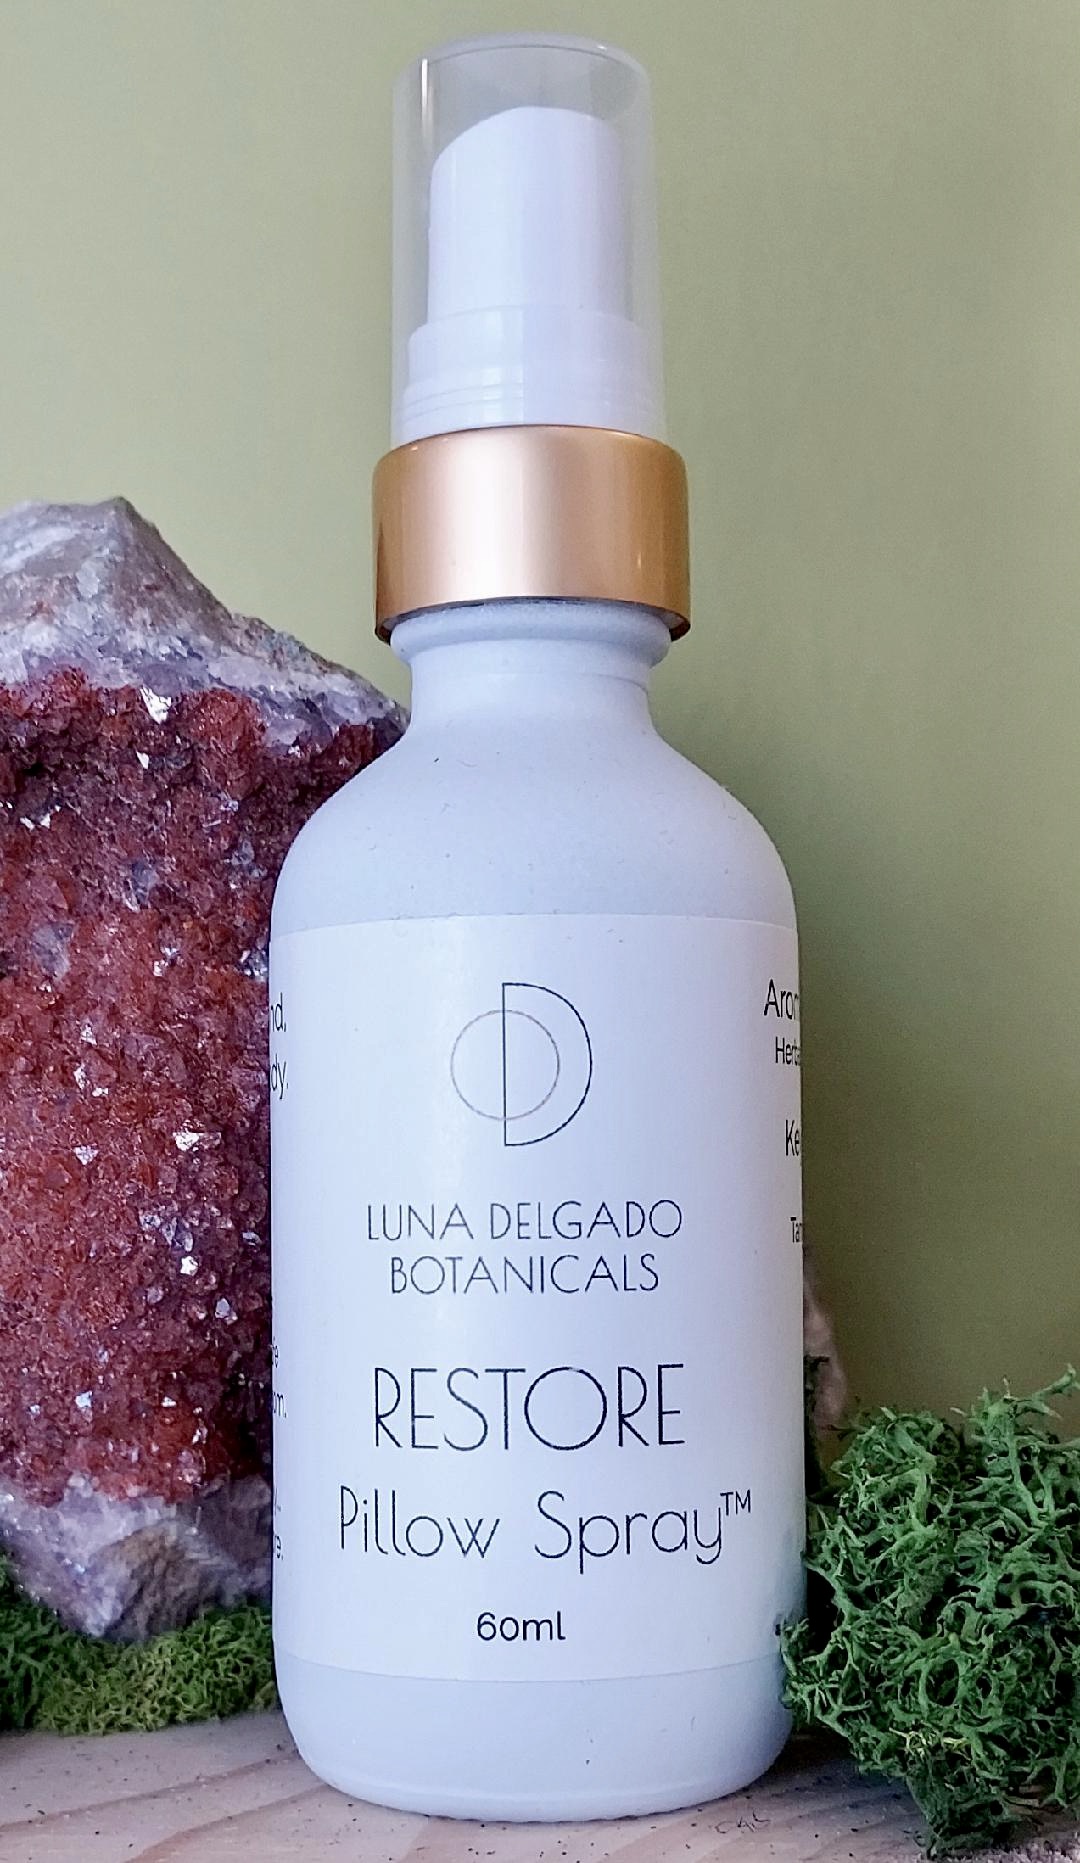 RESTore Pillow Spray - Luna Delgado Botanicals